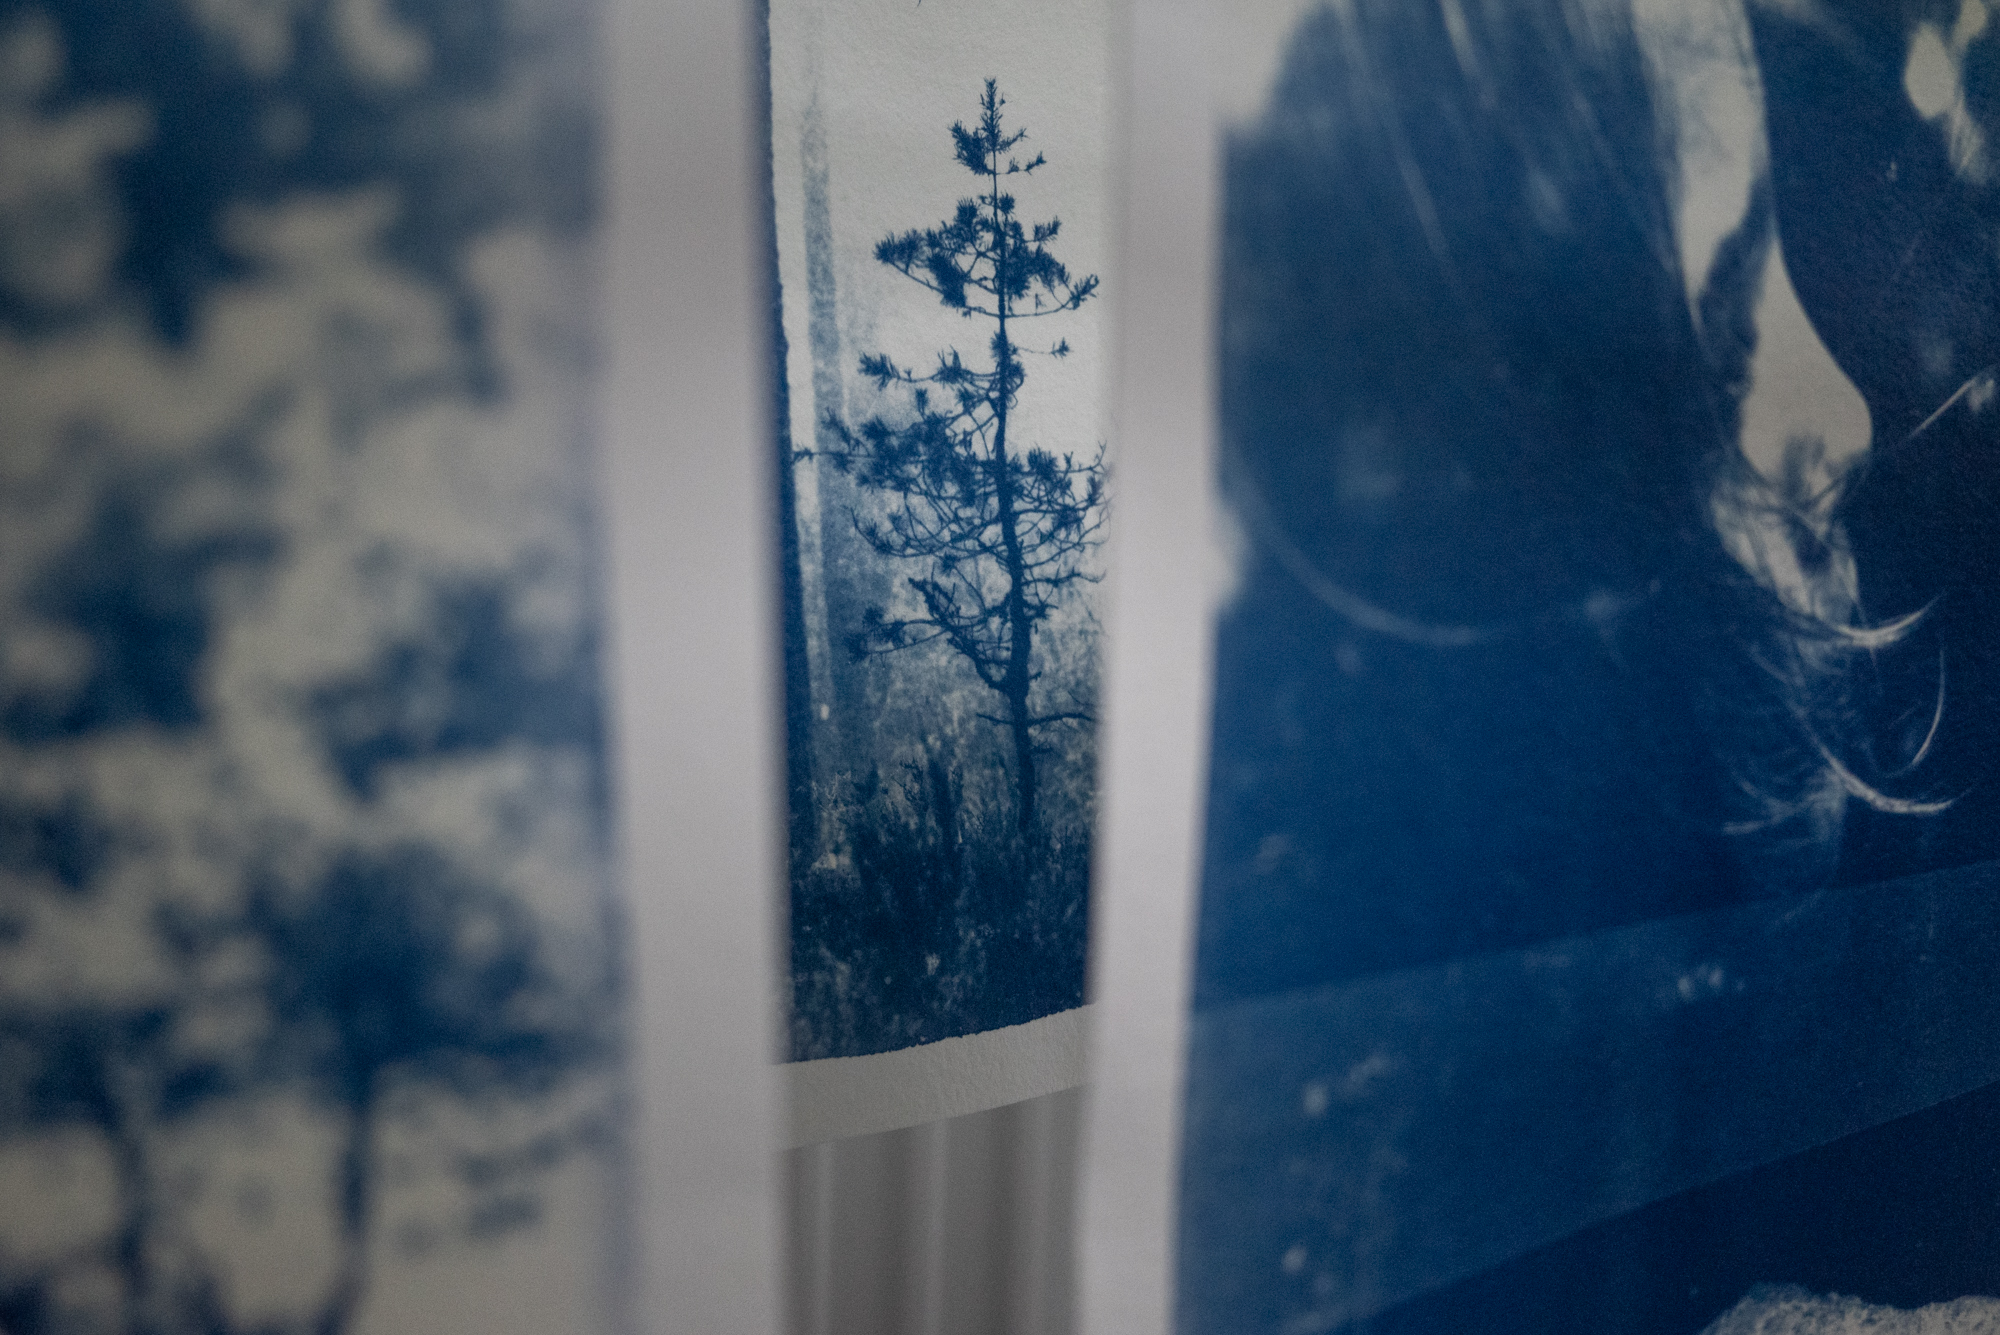 Cyanotype prints drying